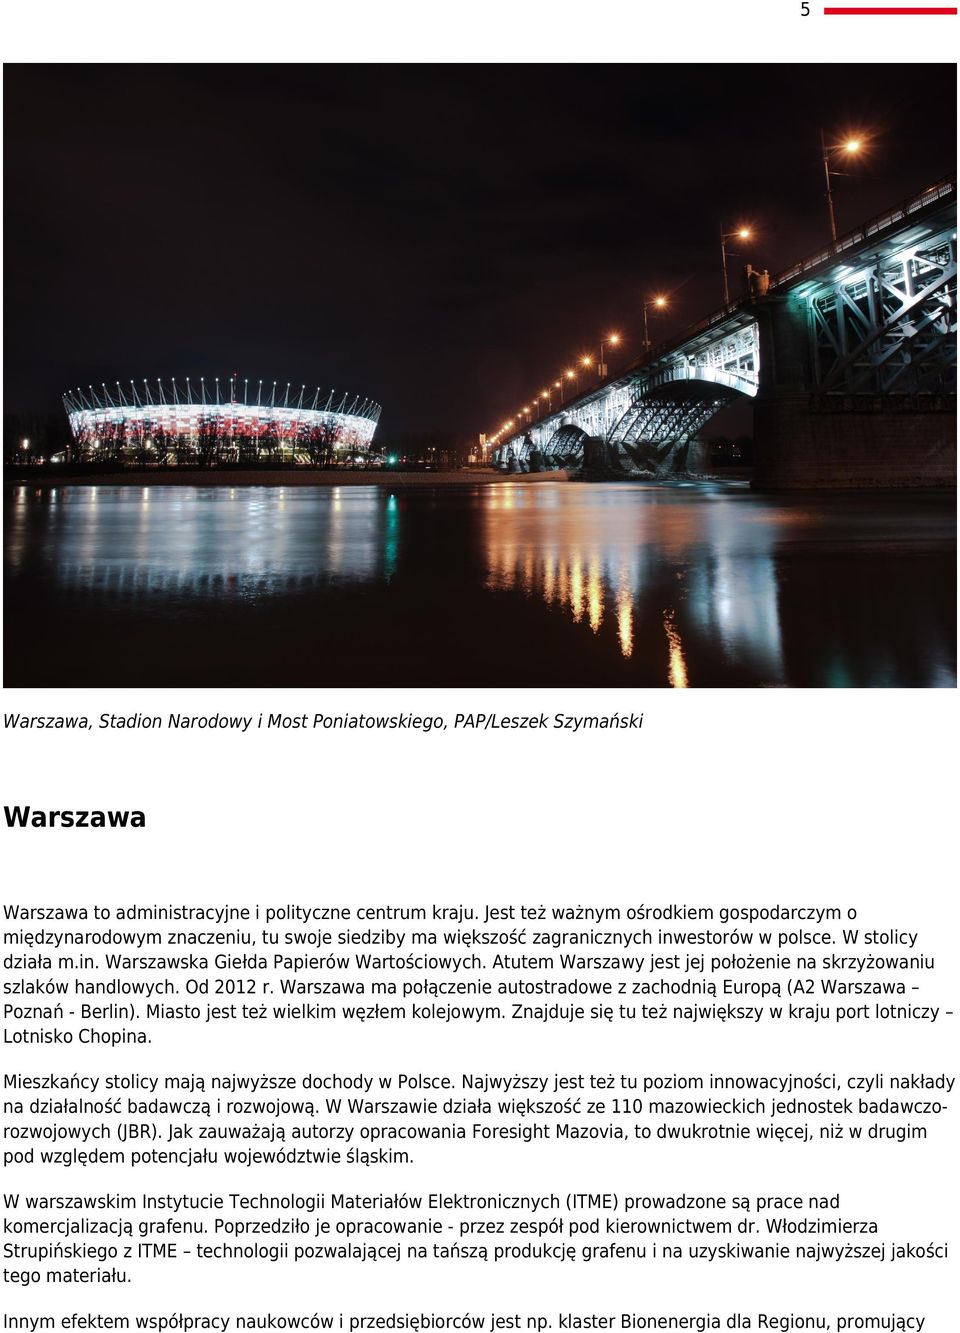 Atutem Warszawy jest jej położenie na skrzyżowaniu szlaków handlowych. Od 2012 r. Warszawa ma połączenie autostradowe z zachodnią Europą (A2 Warszawa Poznań - Berlin).